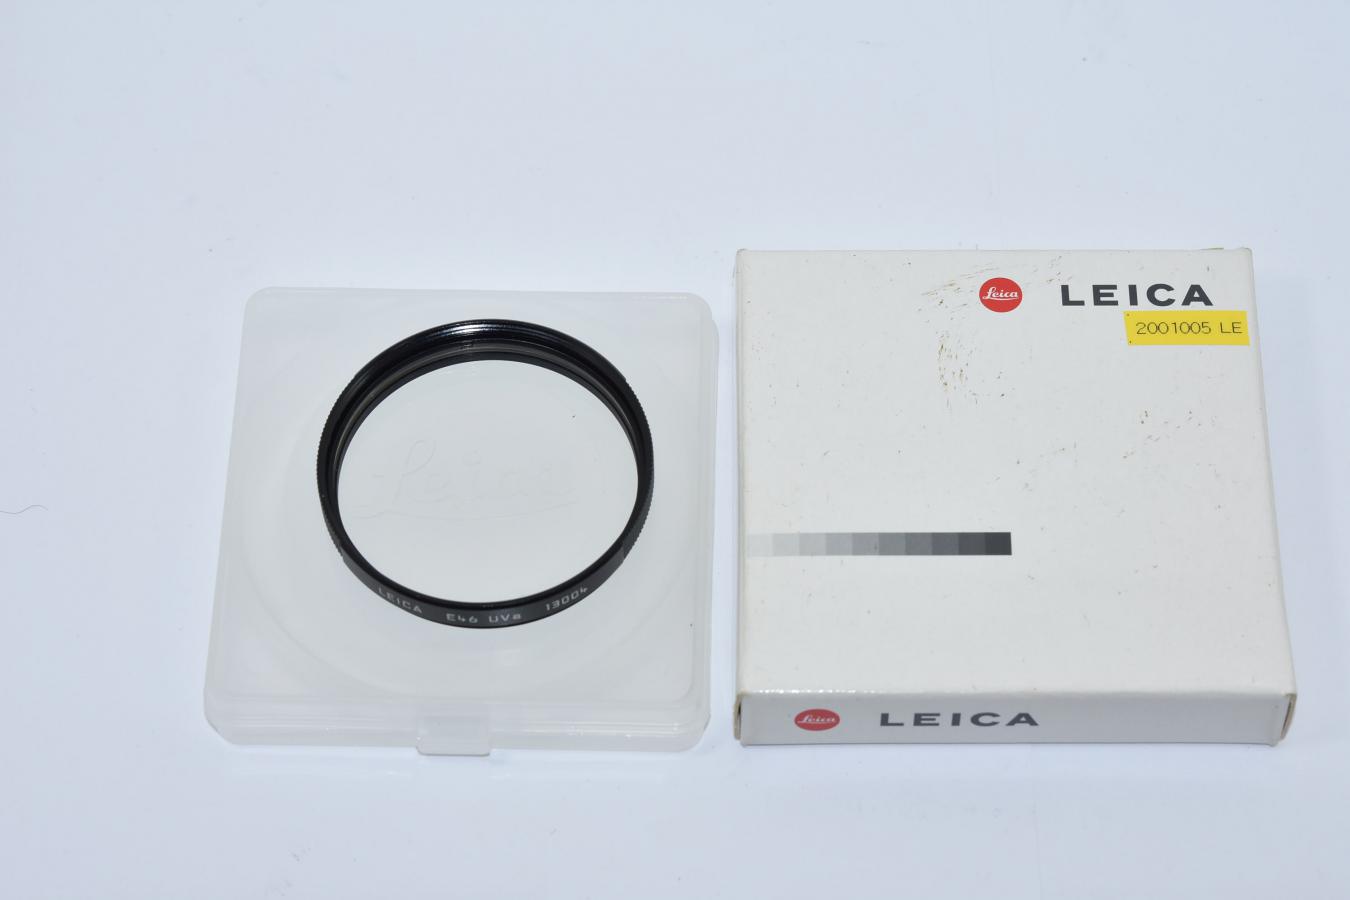 Leica E46 UVa 13004